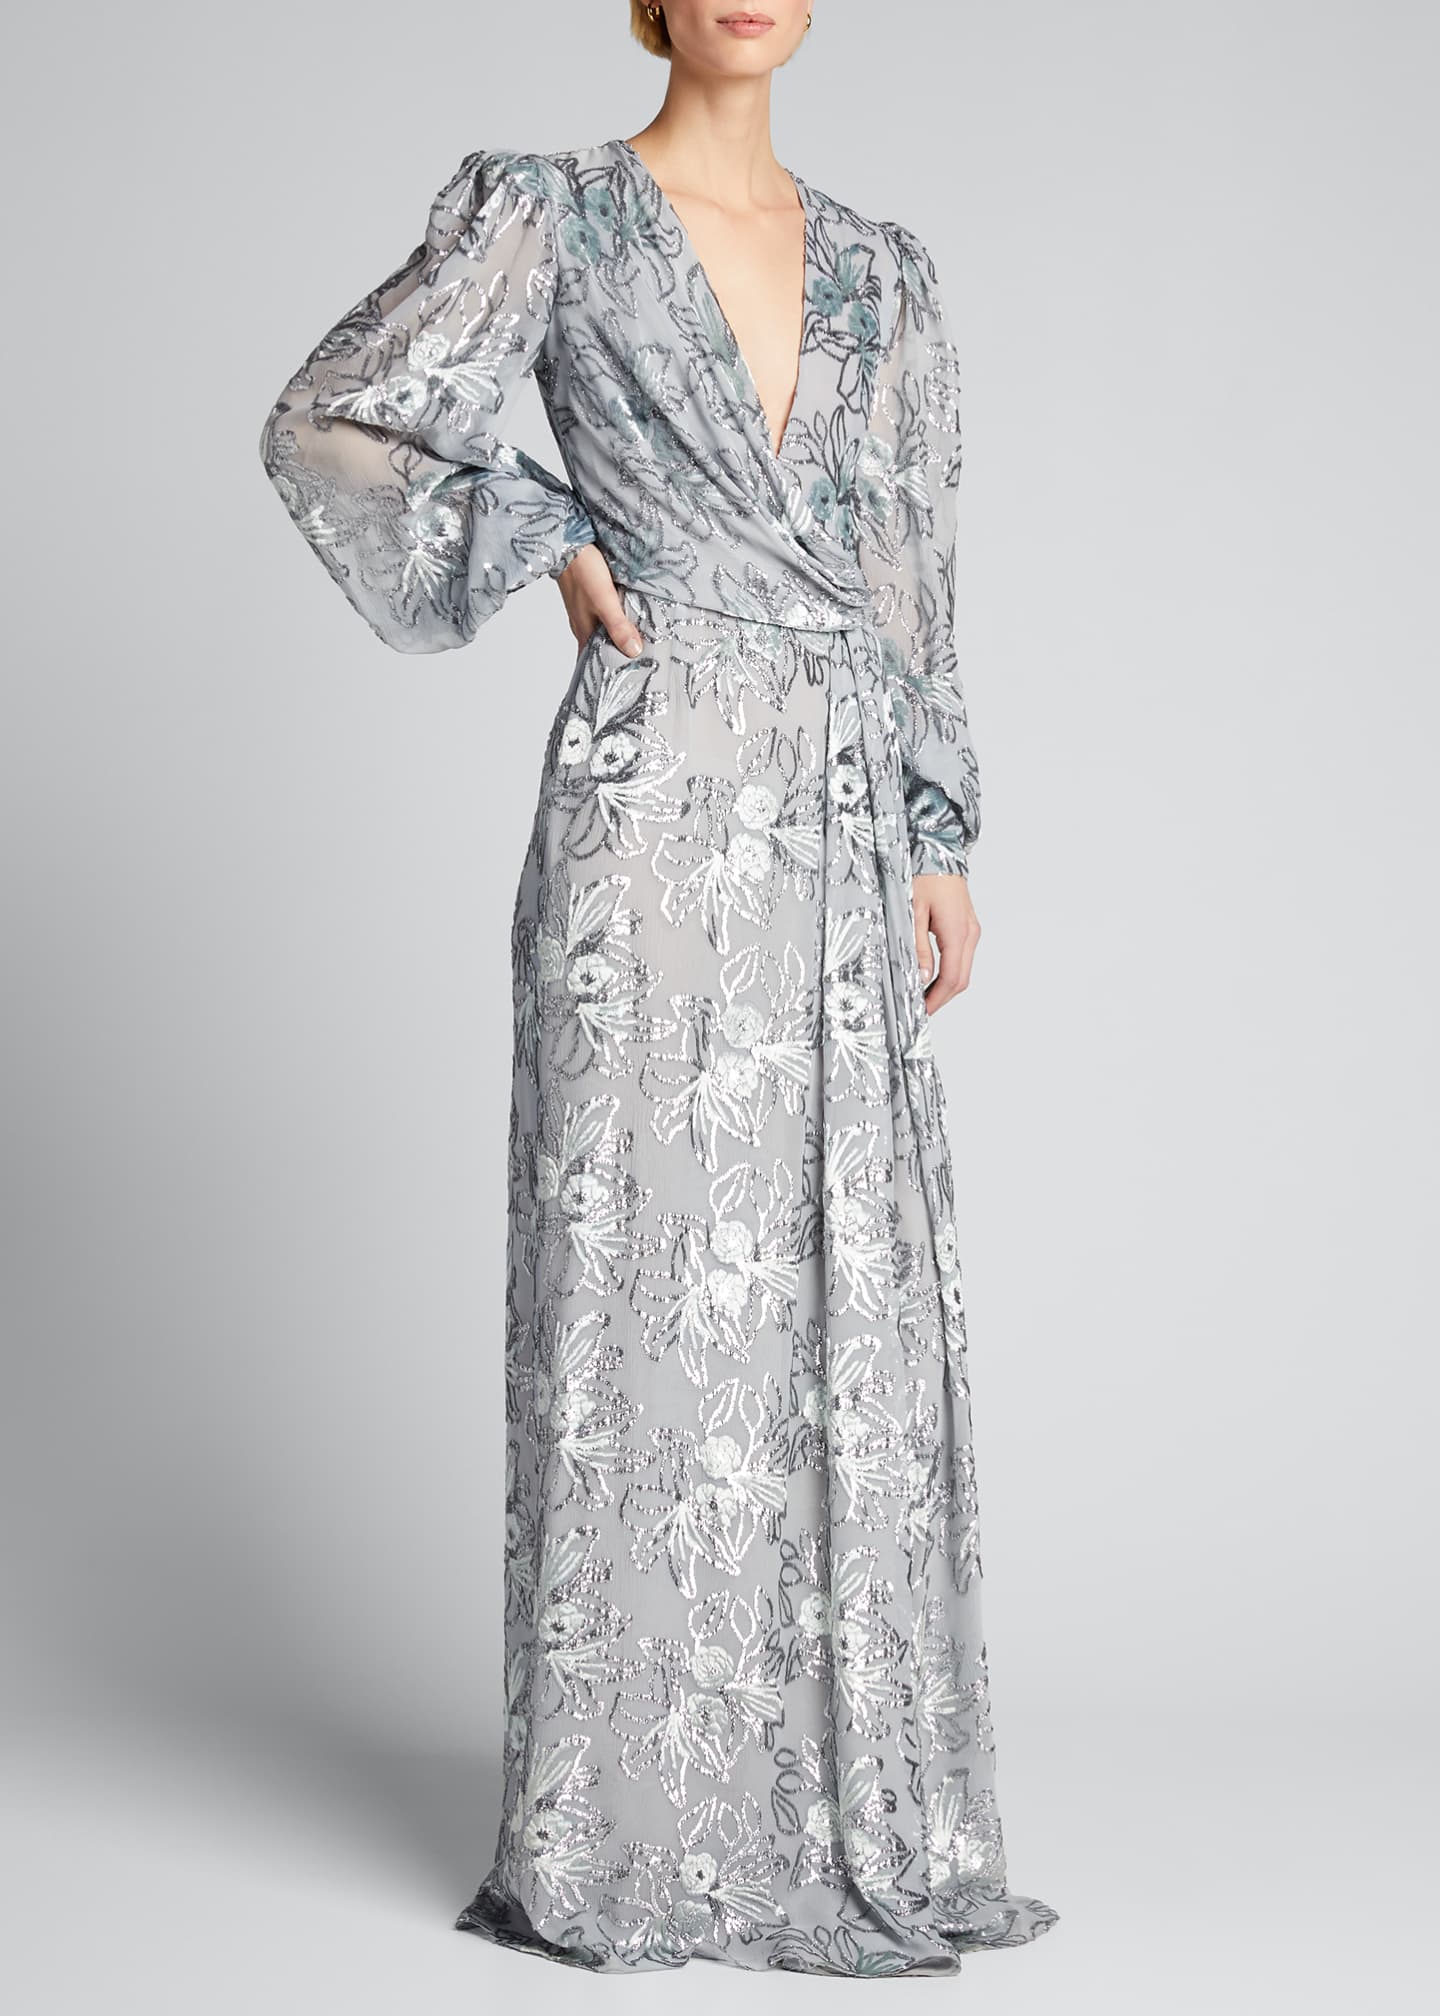 J. Mendel Floral Velvet Sheer-Sleeve Gown - Bergdorf Goodman